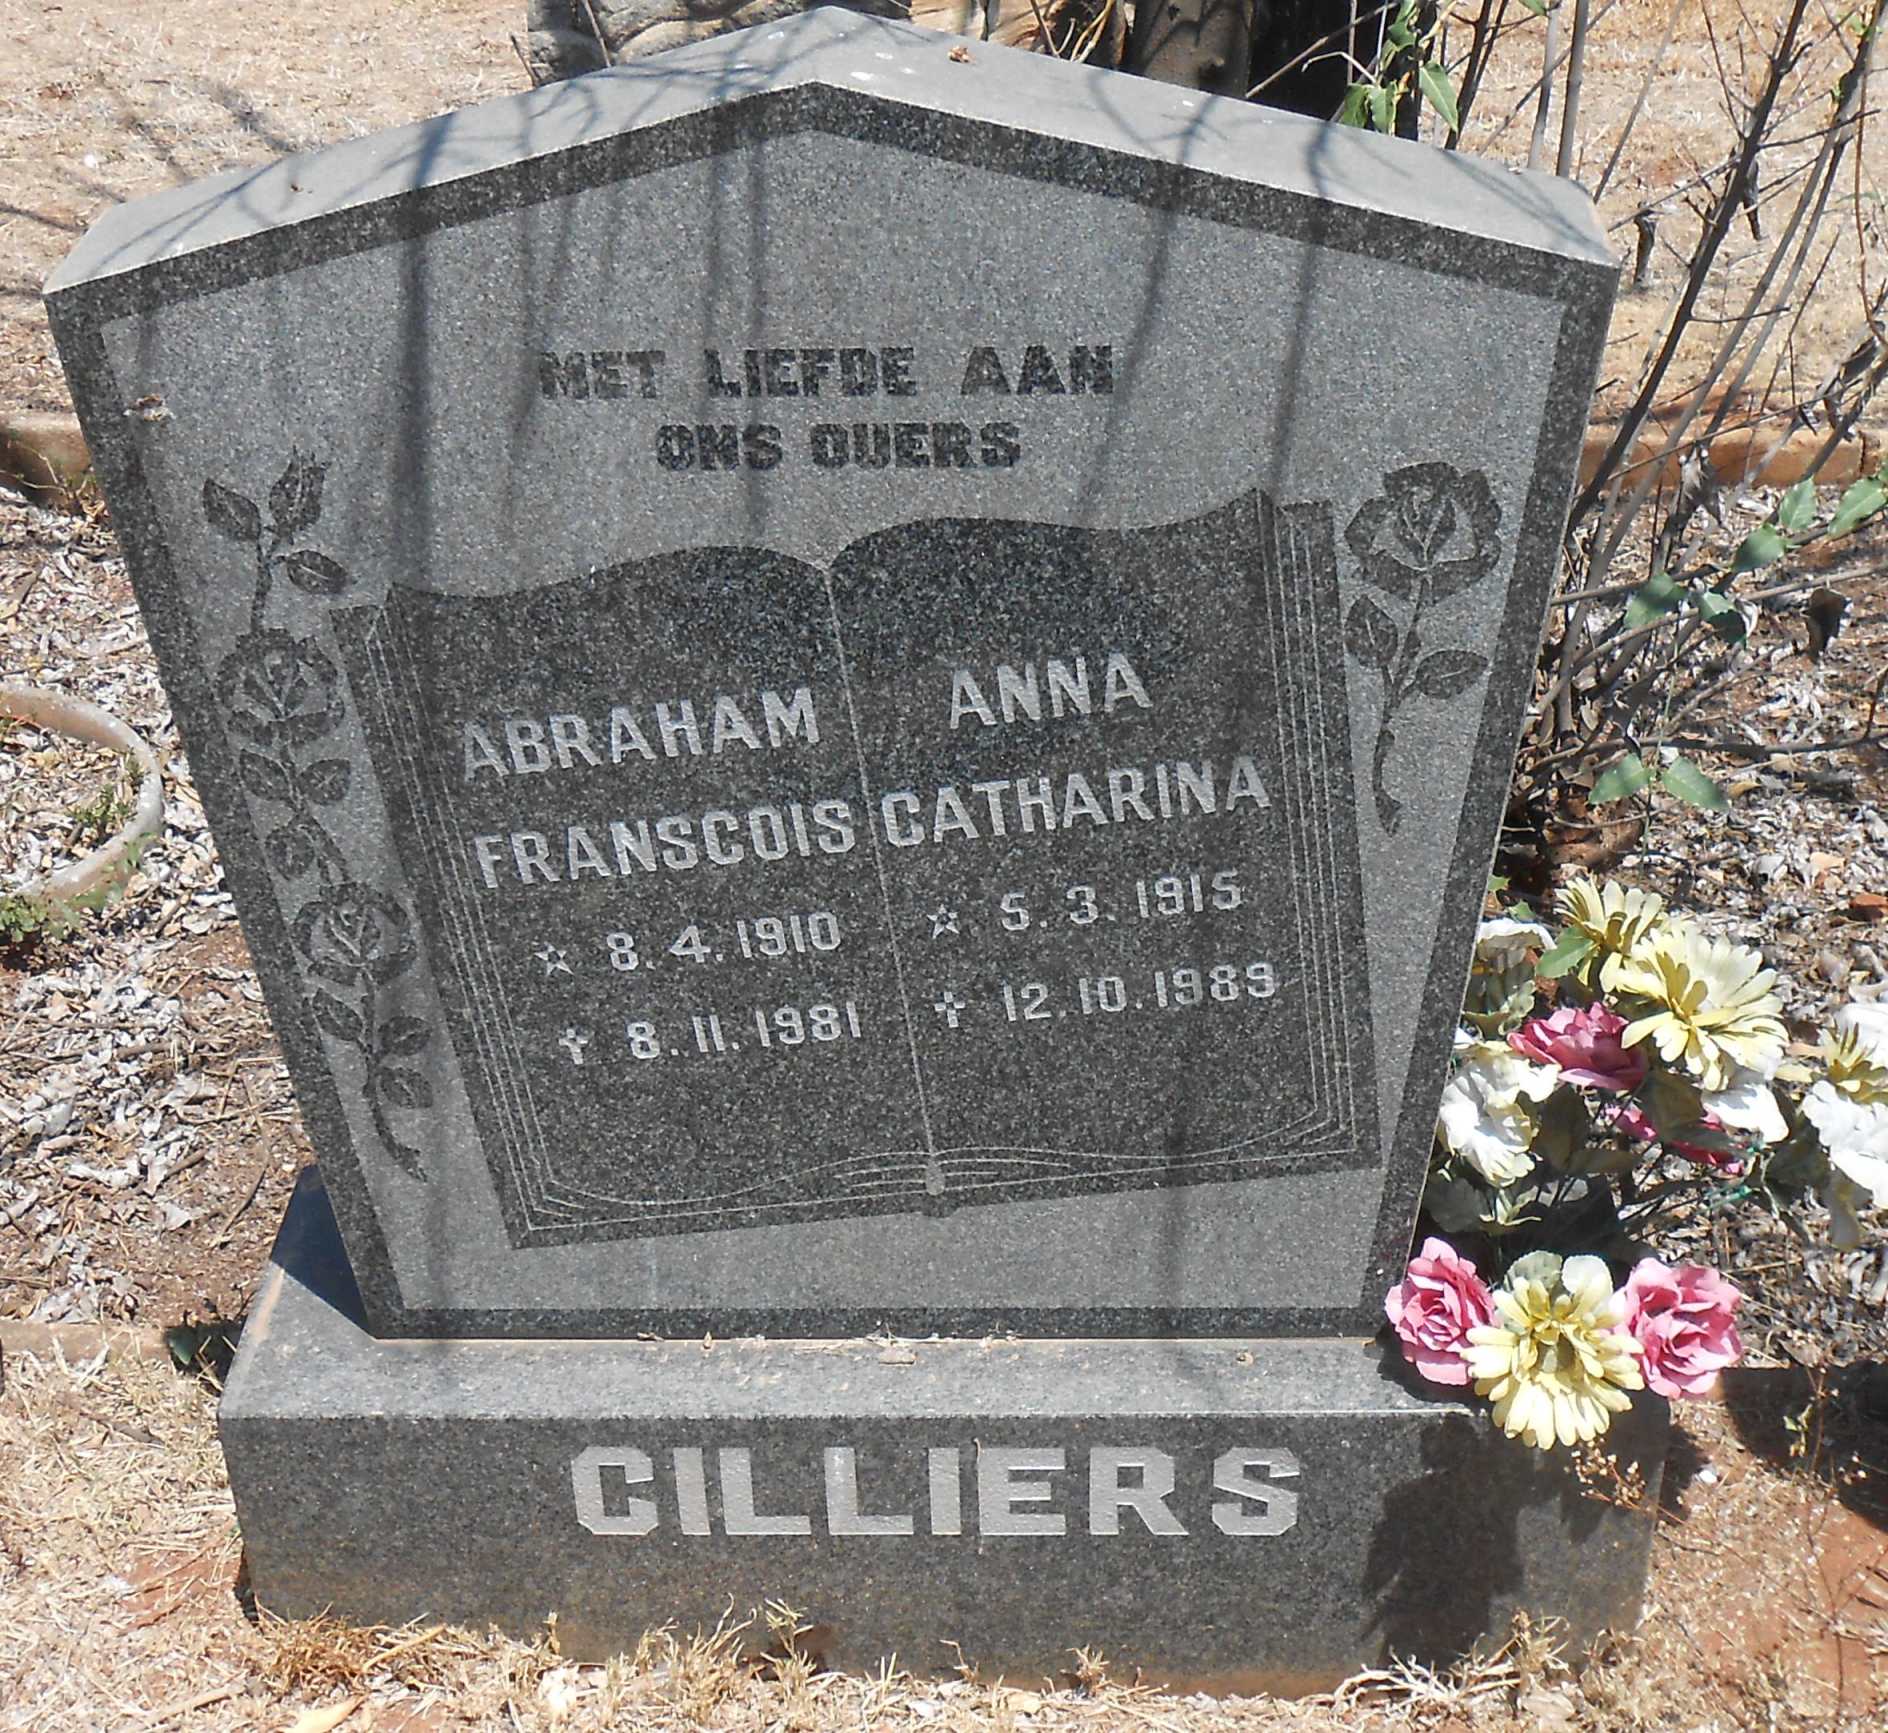 CILLIERS Abraham Franscois 1910-1981 & Anna Catharina 1915-1989